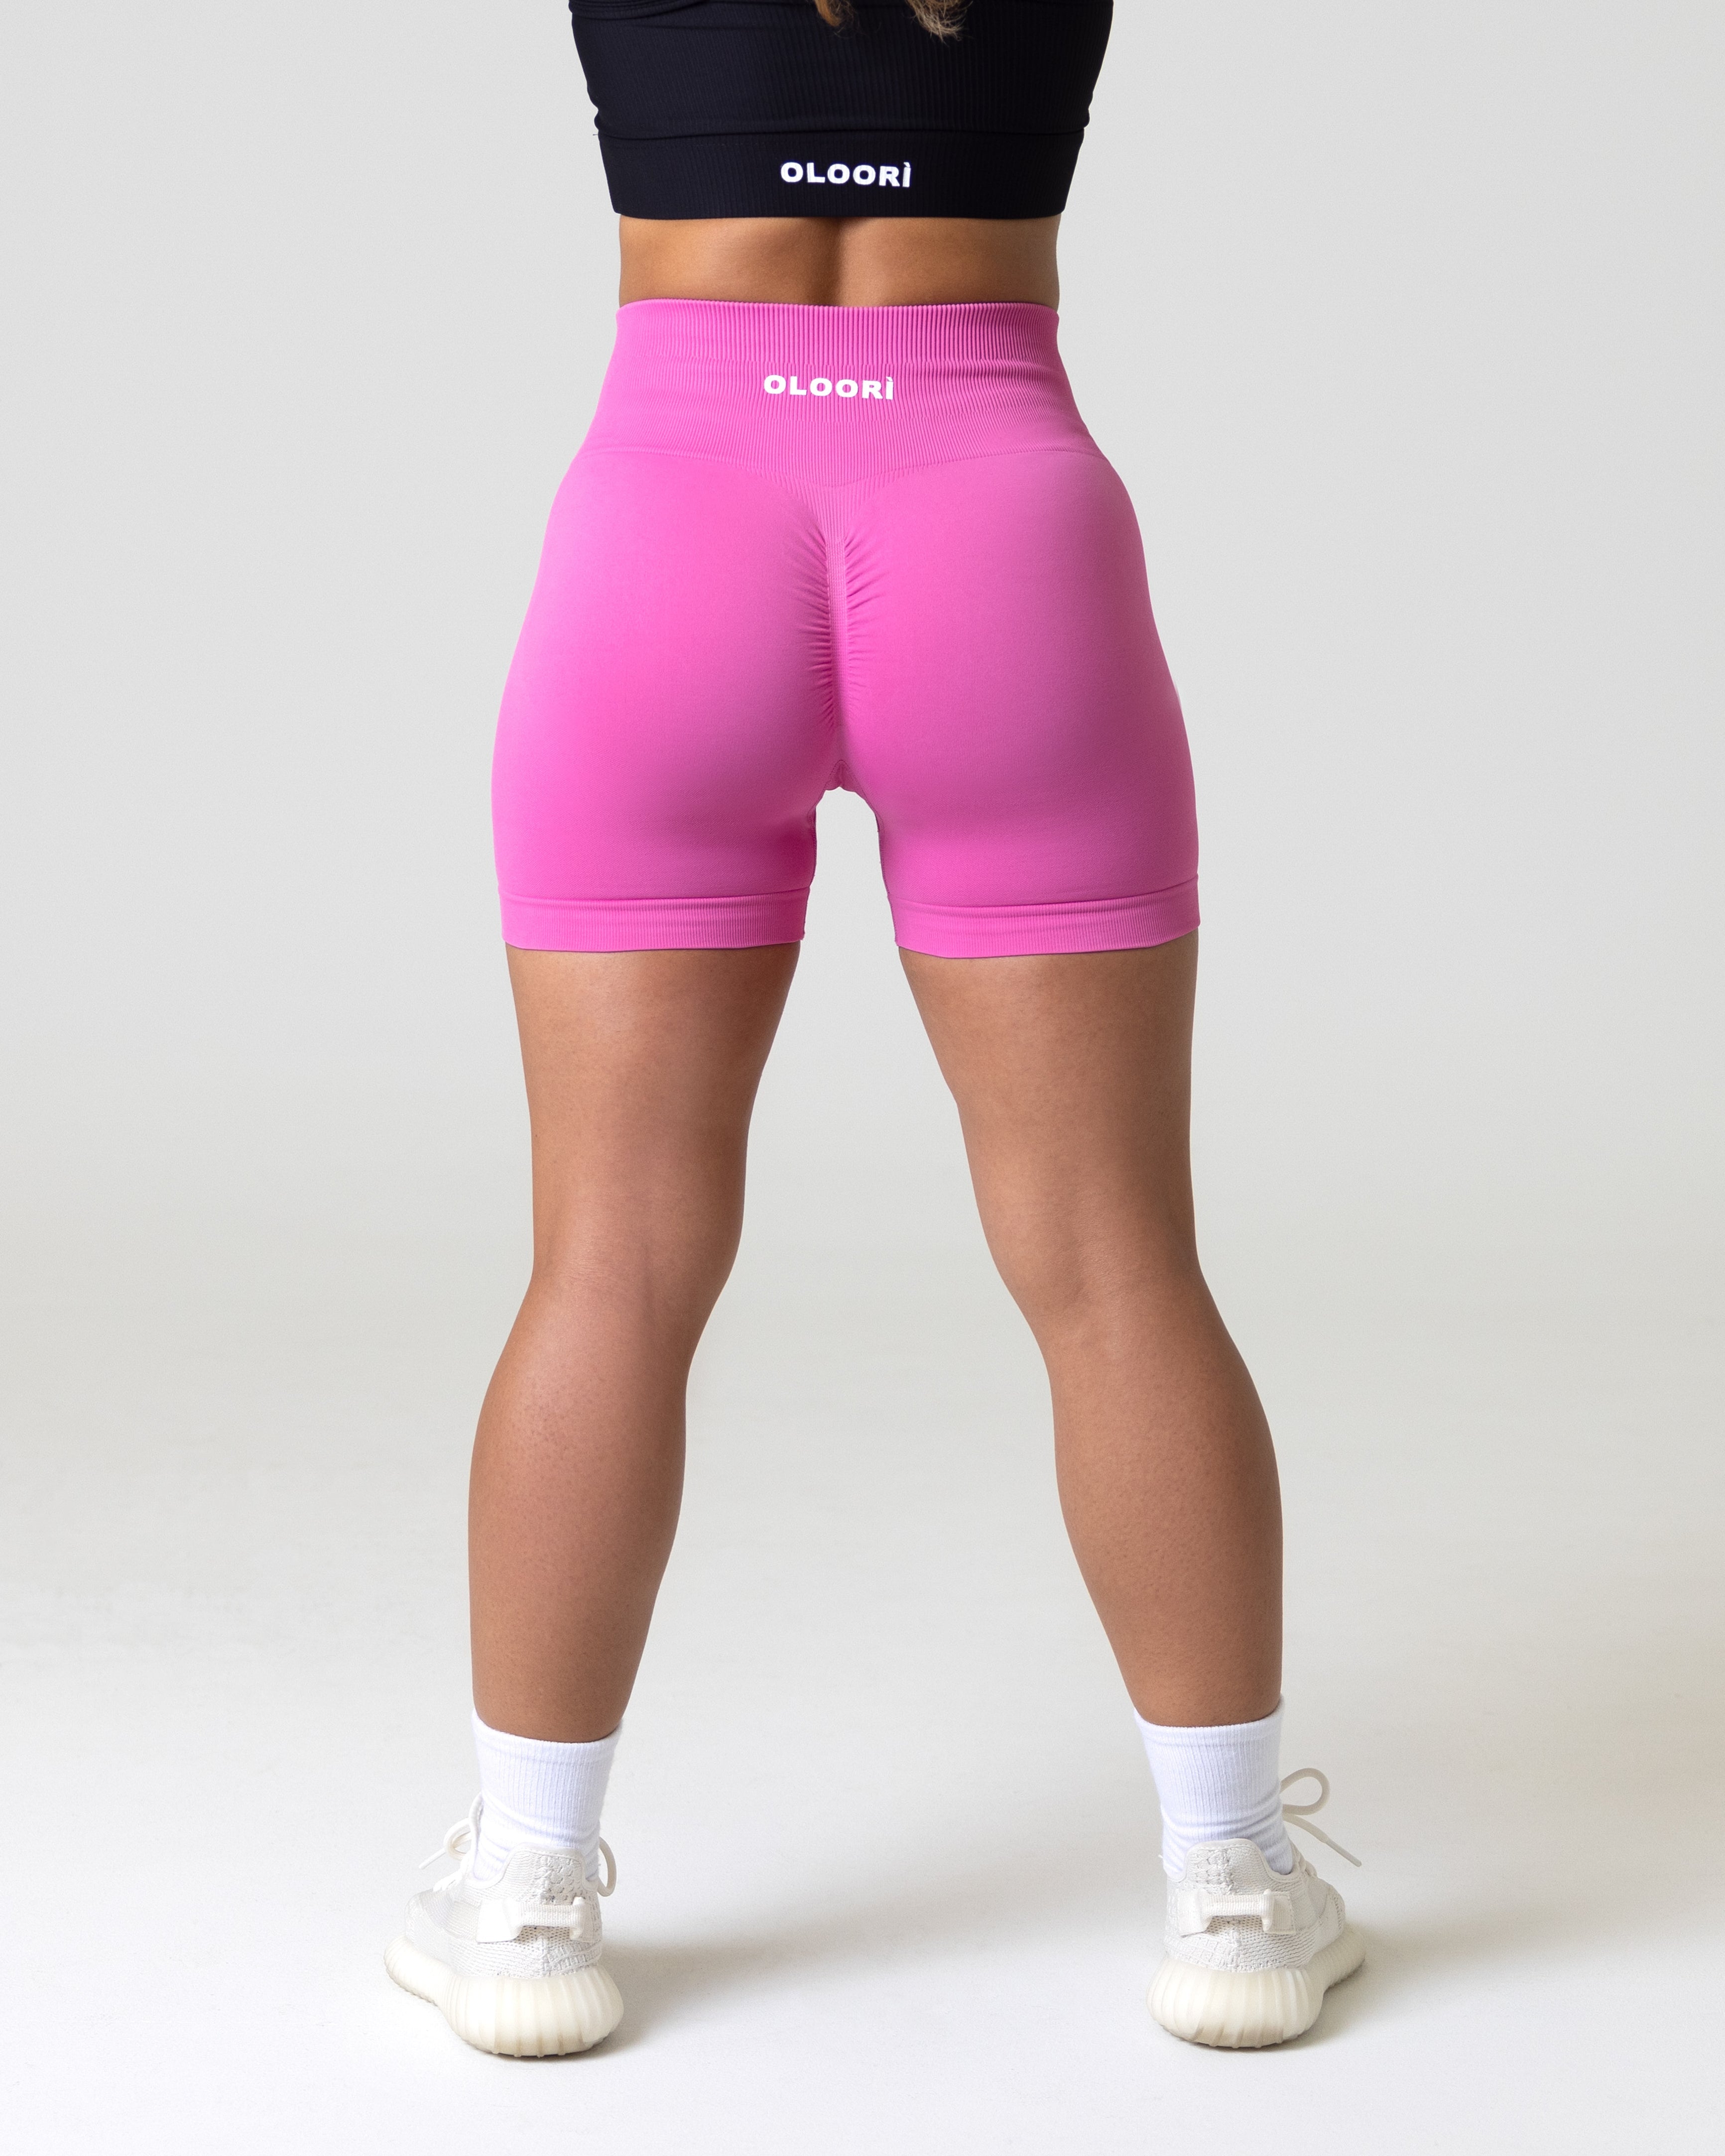 Womens Gym Shorts, Female Workout Shorts